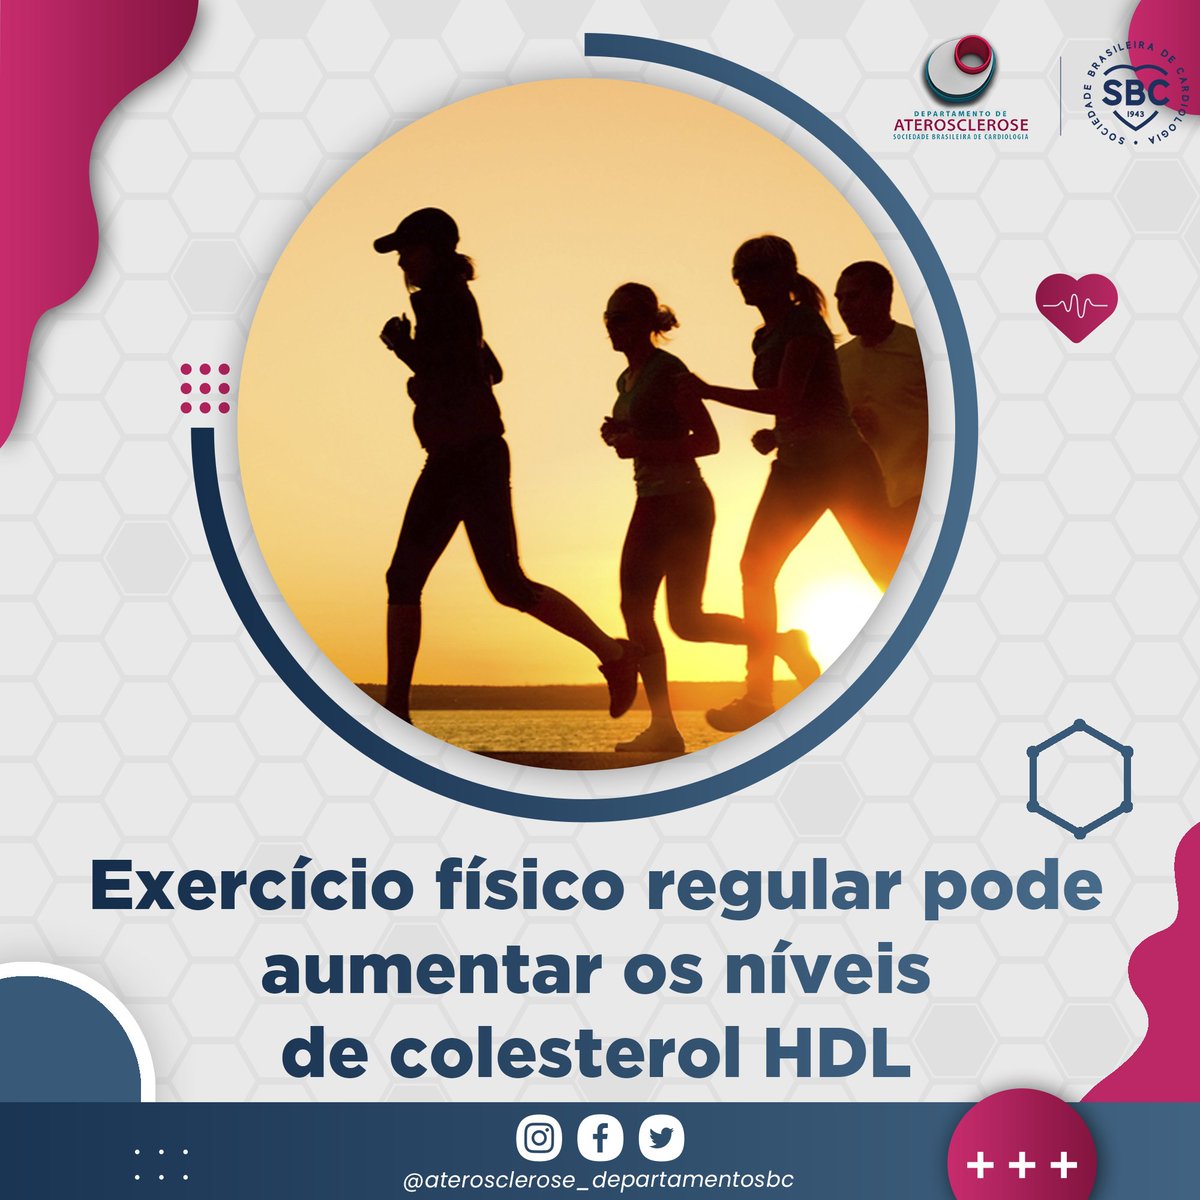 A atividade física regular e o exercício aeróbico têm sido associados ao aumento dos níveis de colesterol HDL. #sbcda #aterosclerose #dislipidemia #enquetes #metanalise #estatina